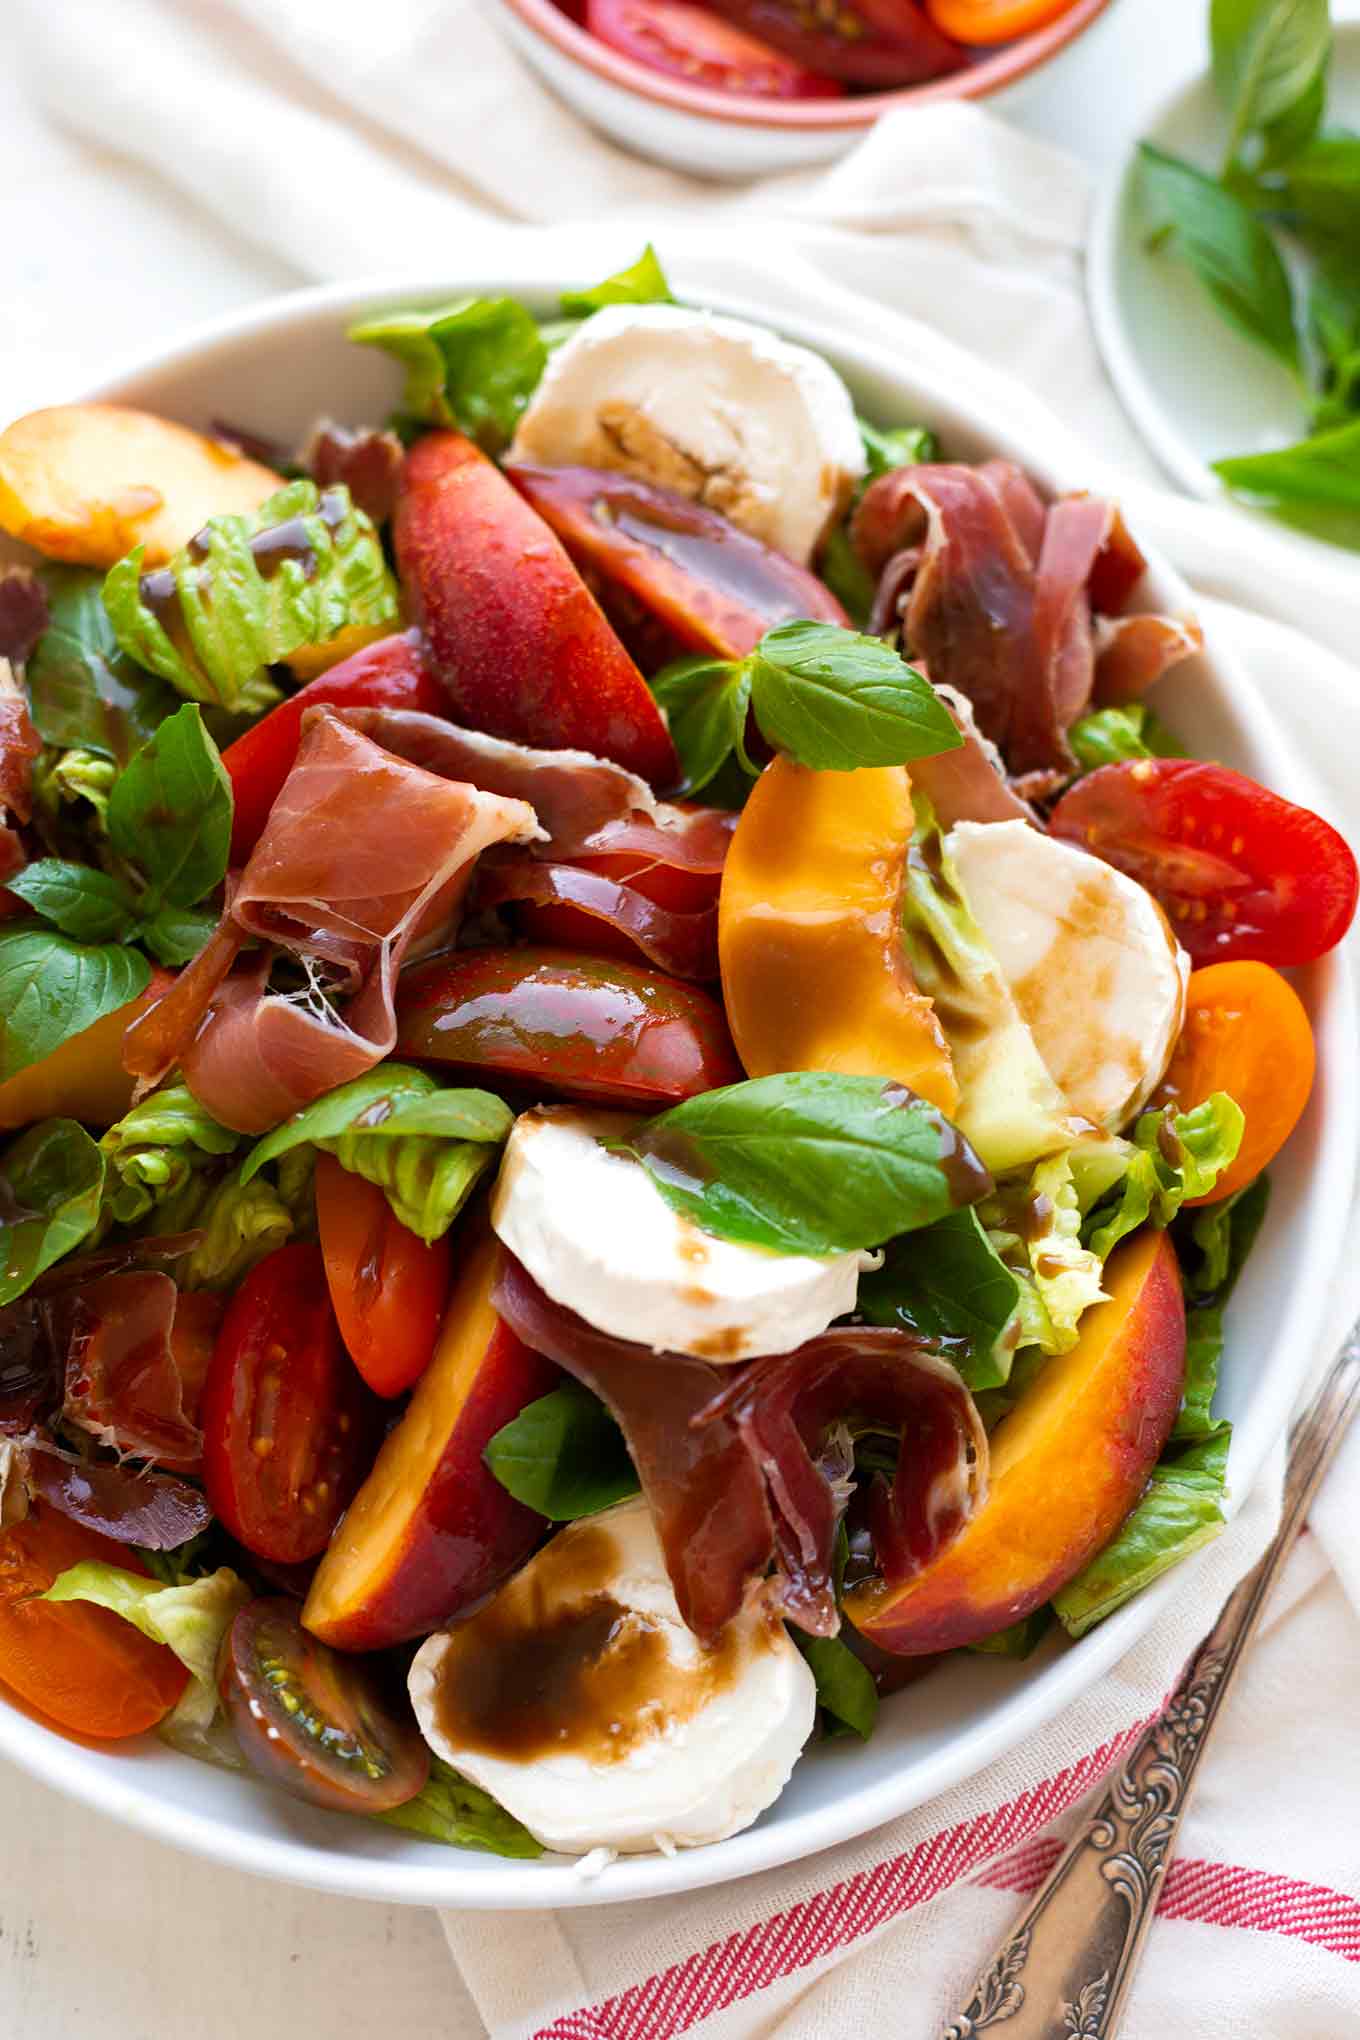 Sommerlicher Nektarinen-Ziegenkäse-Salat mit bunten Tomaten. Dieses leckere Salat-Rezept ist einfach, richtig beeindruckend und erfordert nur 20 Minuten Zeit! - Kochkarussell.com #salat #nektarinen #ziegenkäse #rezept #kochkarussell